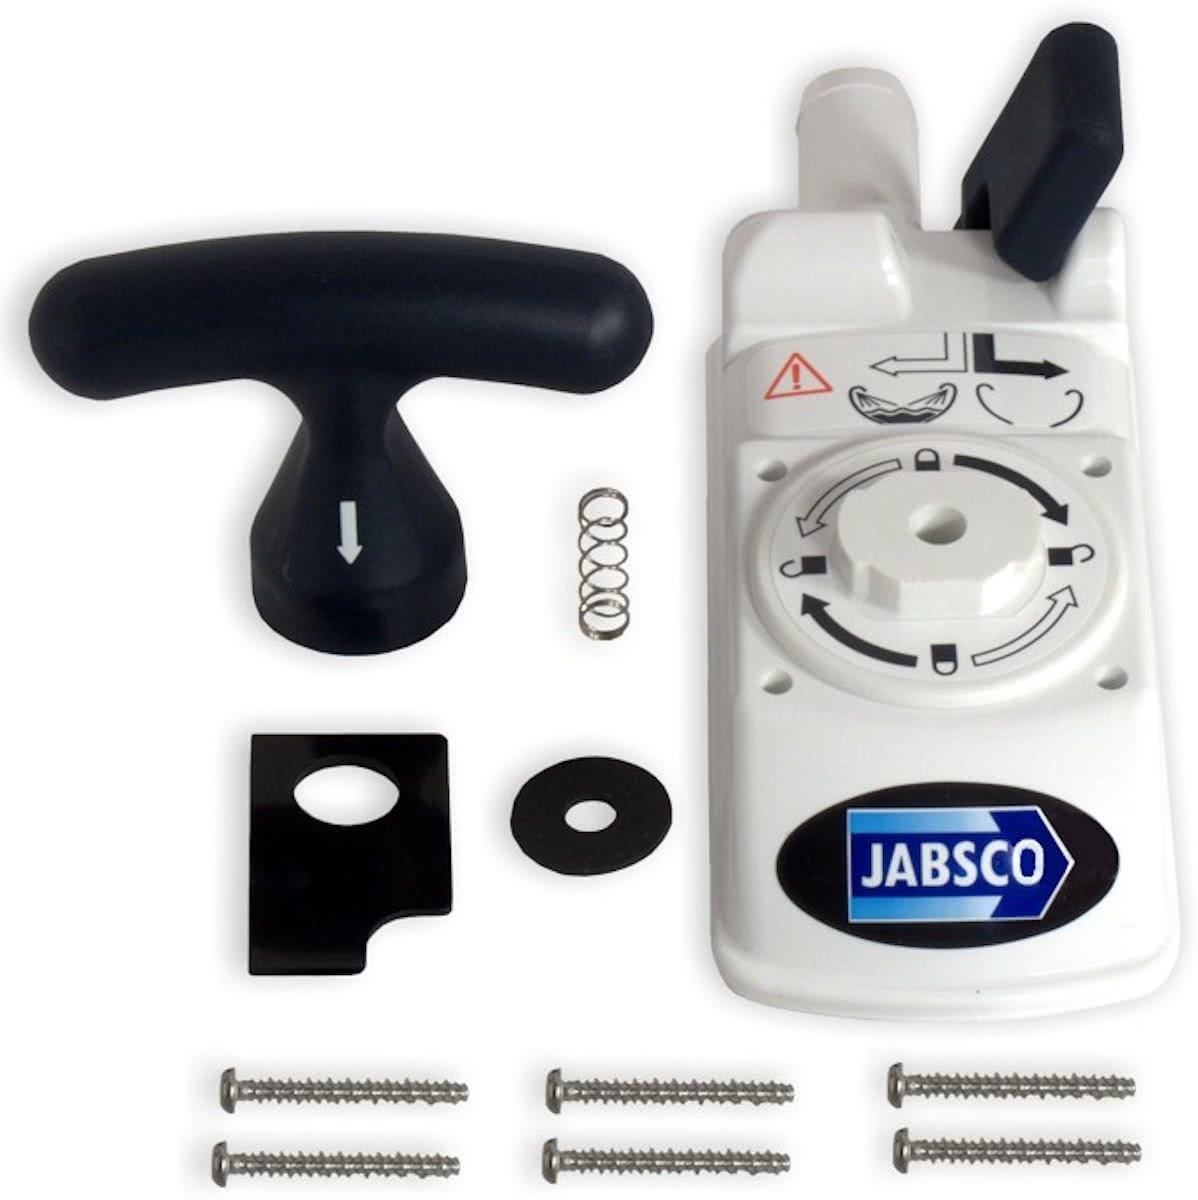 Jabsco 29094-3000 Bovenhuis van Toiletpomp Servicekit C - Bovenhuis van Toiletpomp inclusief pakkingen en bevestigingsmateriaal